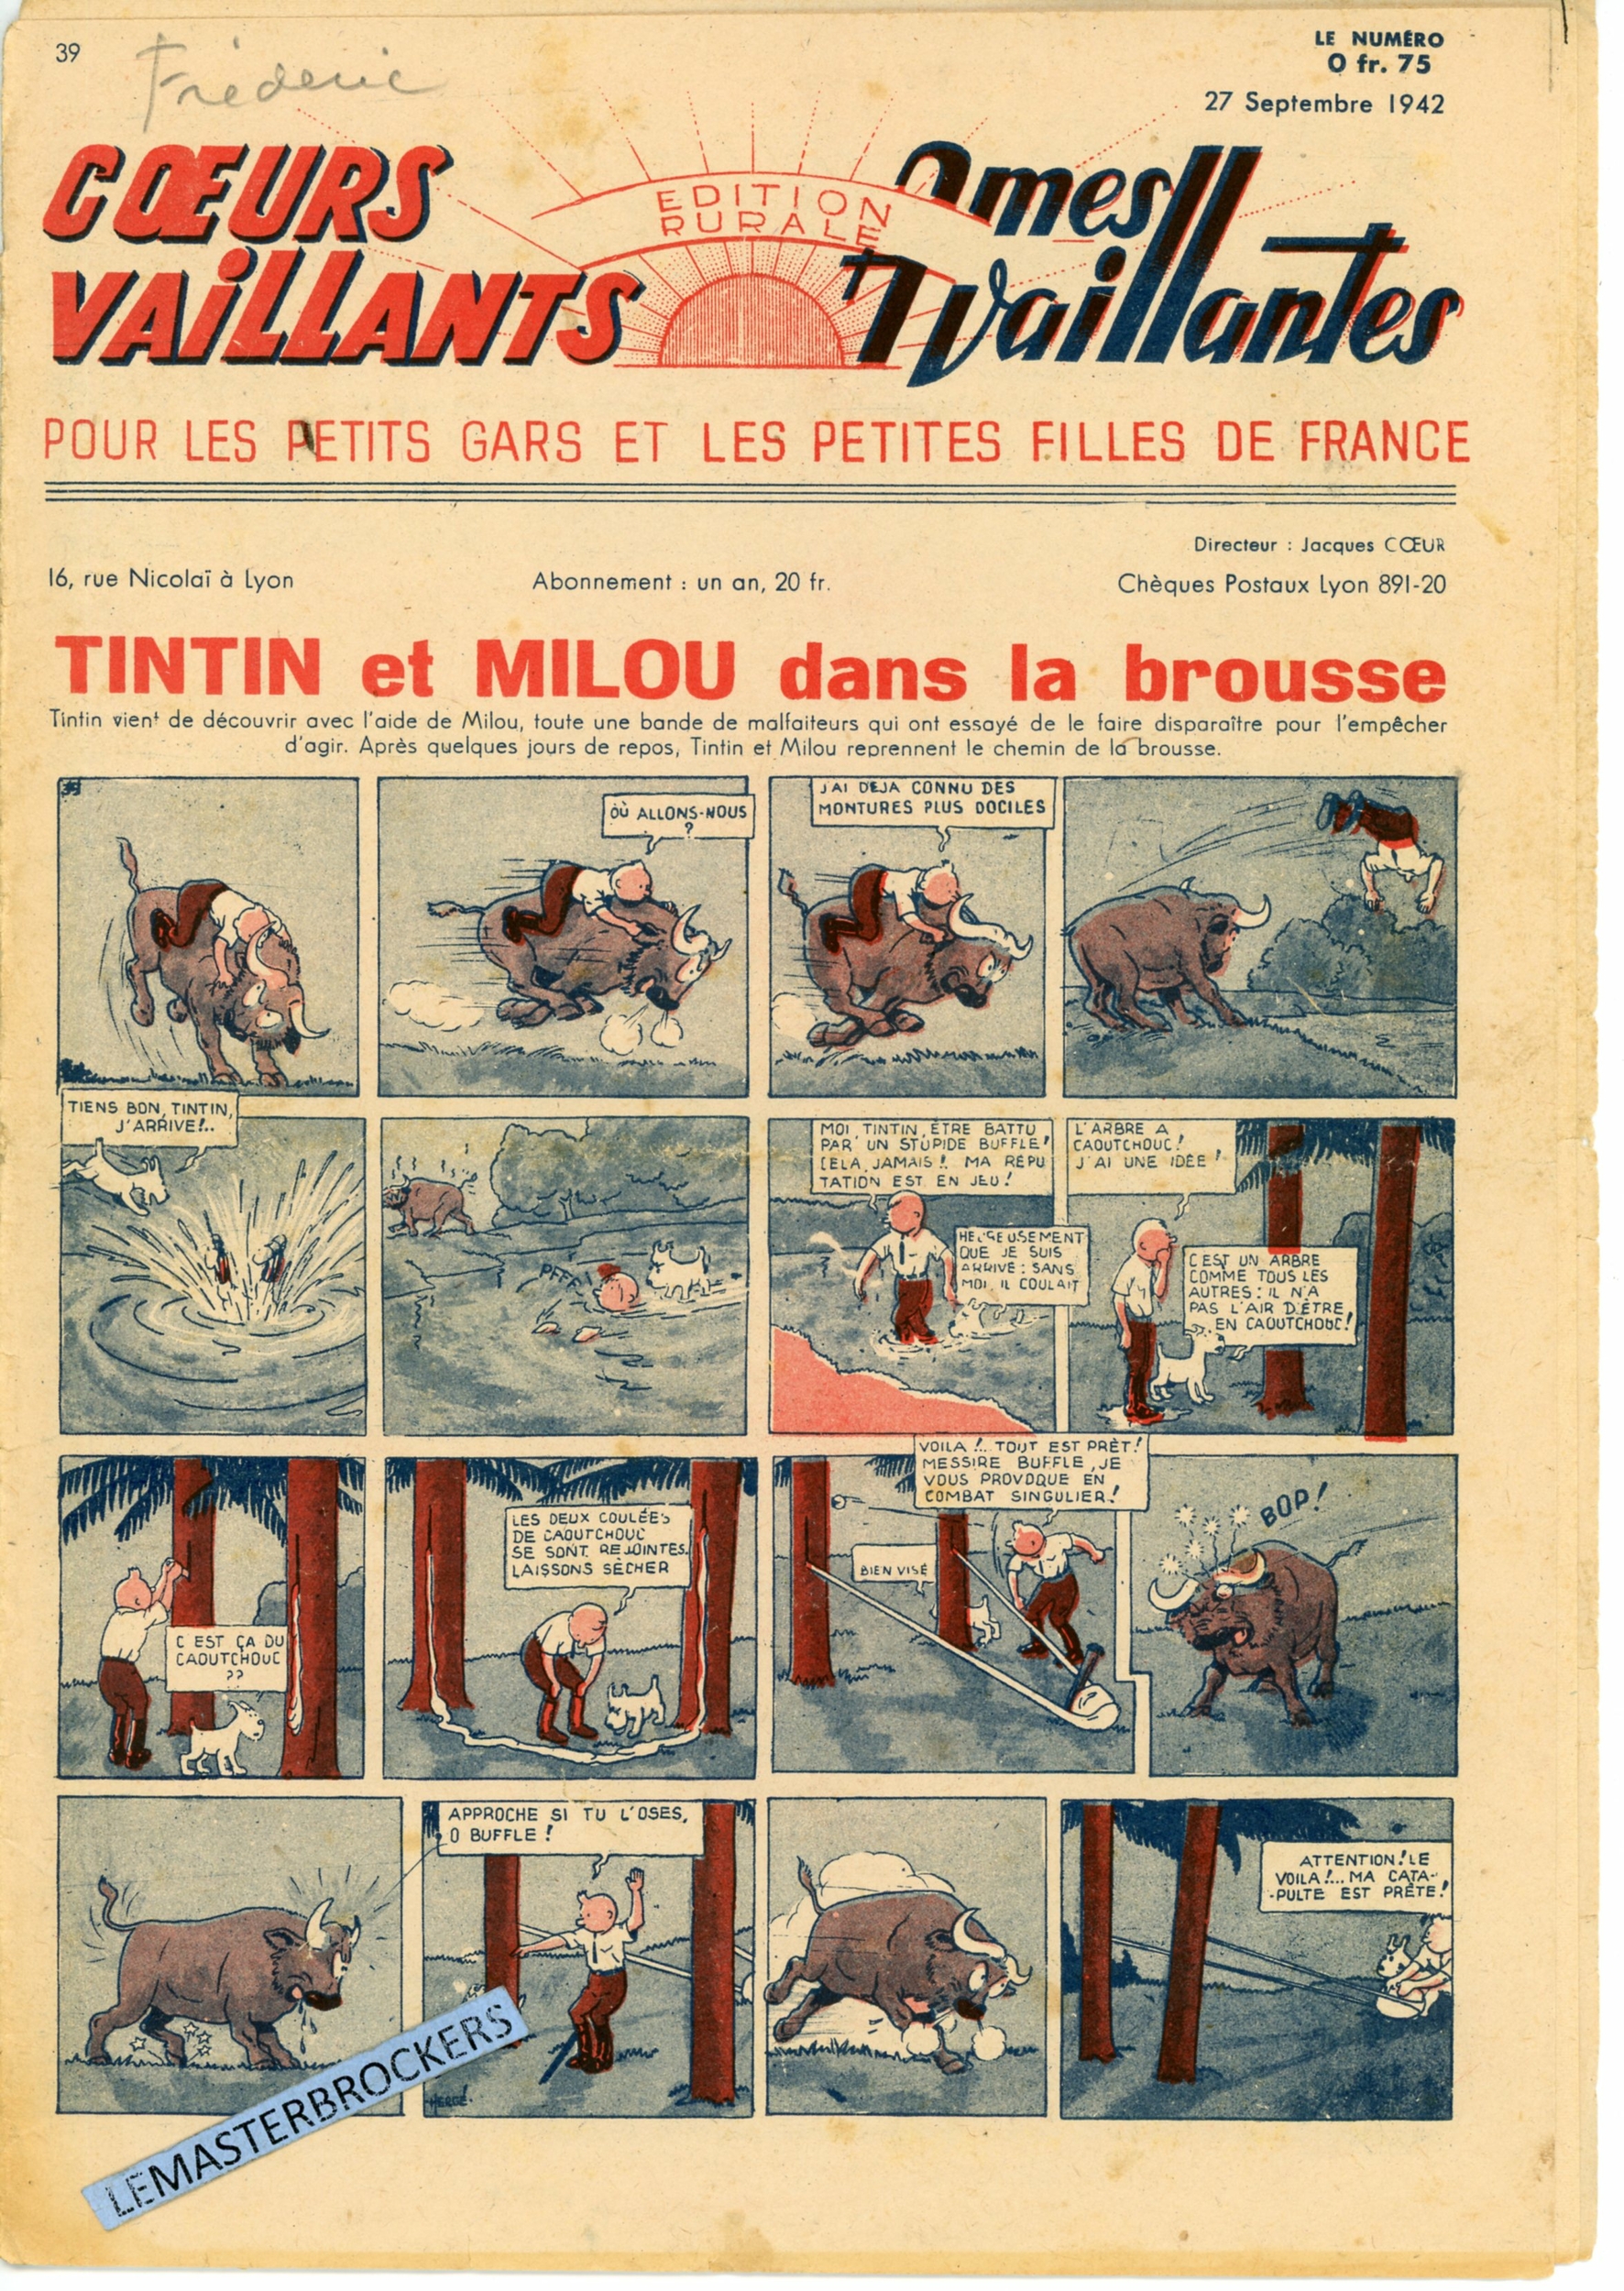 TINTIN ET MILOU DANS LA BROUSSE 1942 COEURS VAILLANTS 39  LEMASTERBROCKERS